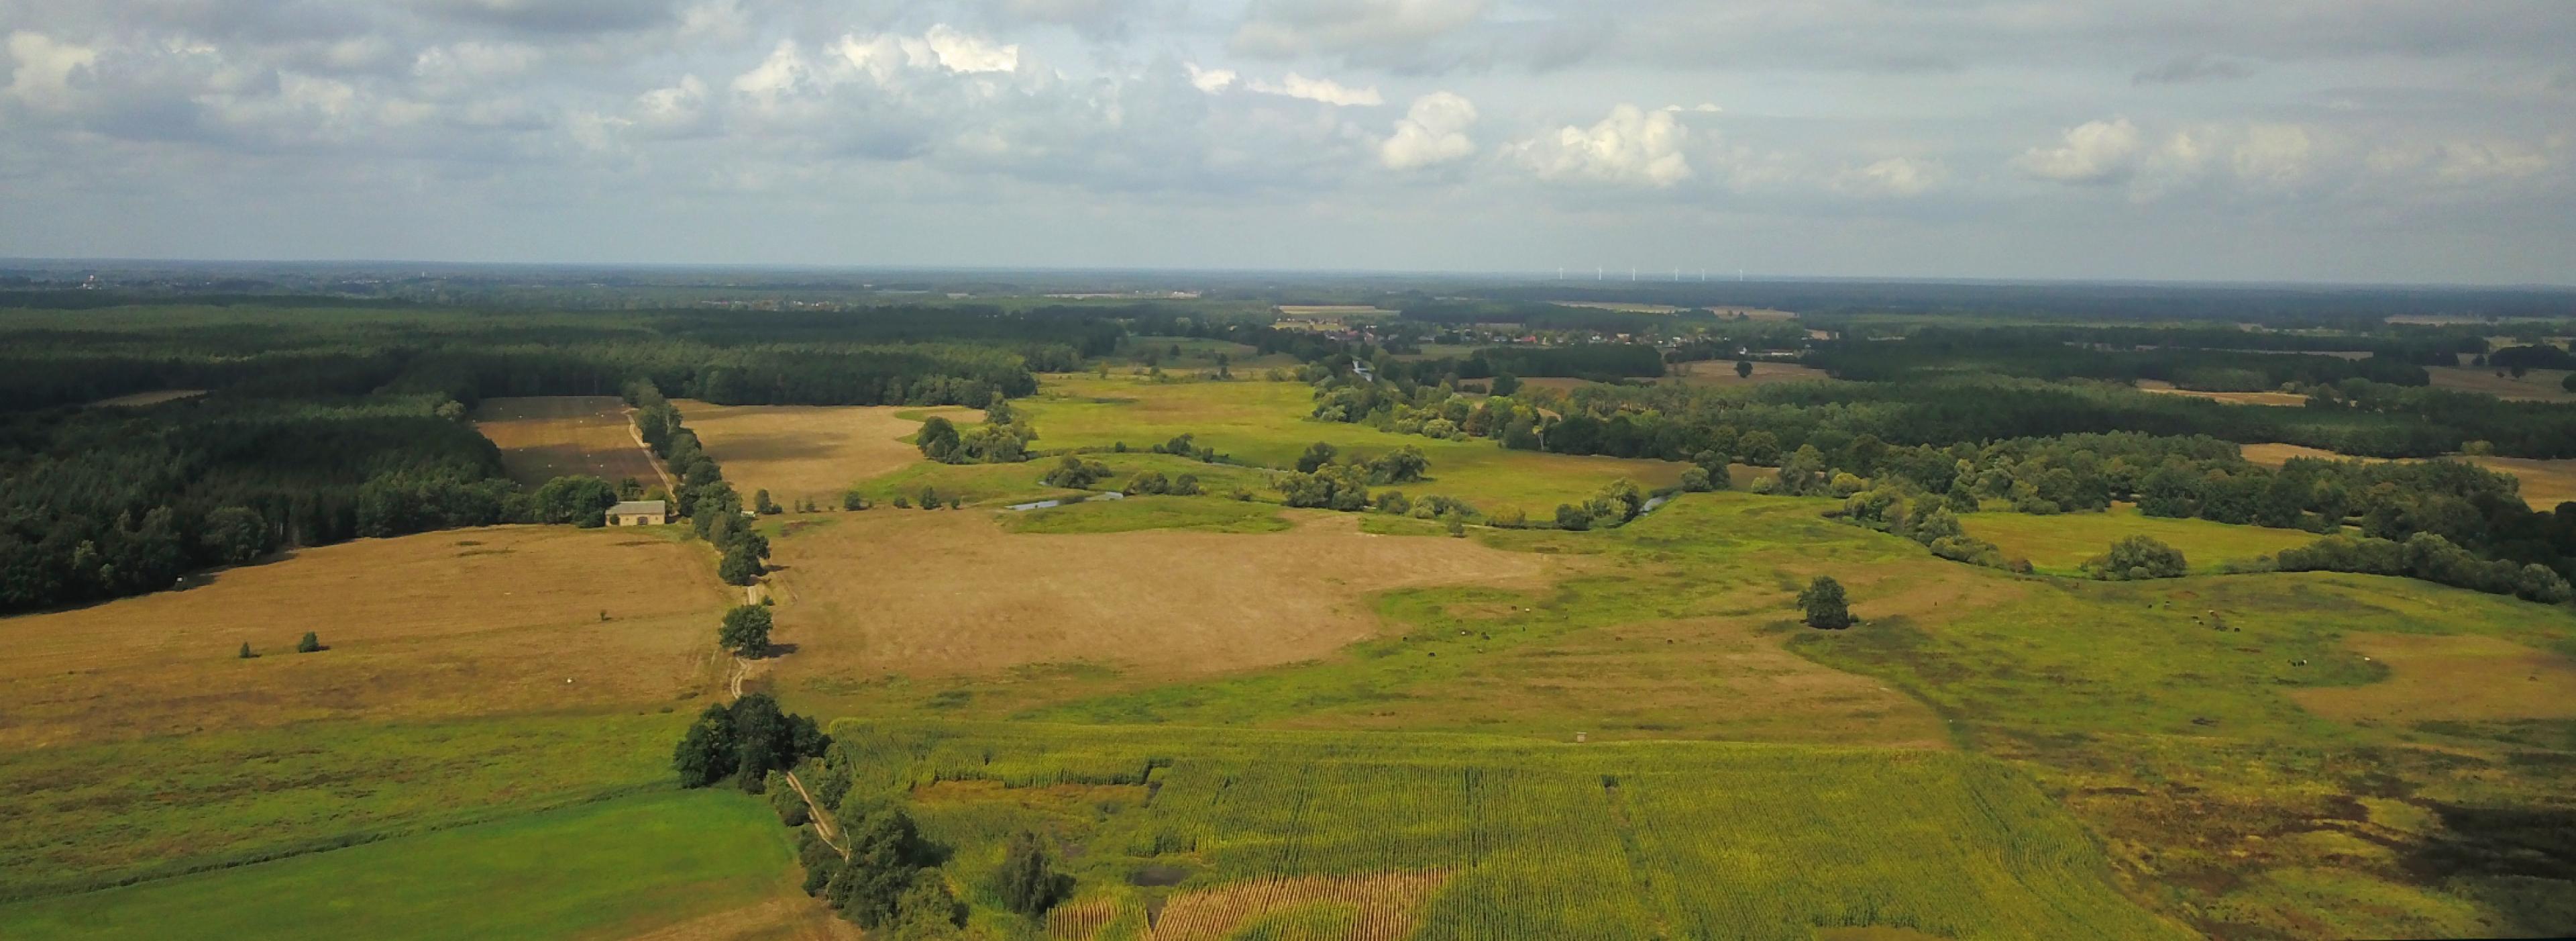 Ein Luftfoto eines großen Grünlandstücks mit Wald und Schilfabschnitten